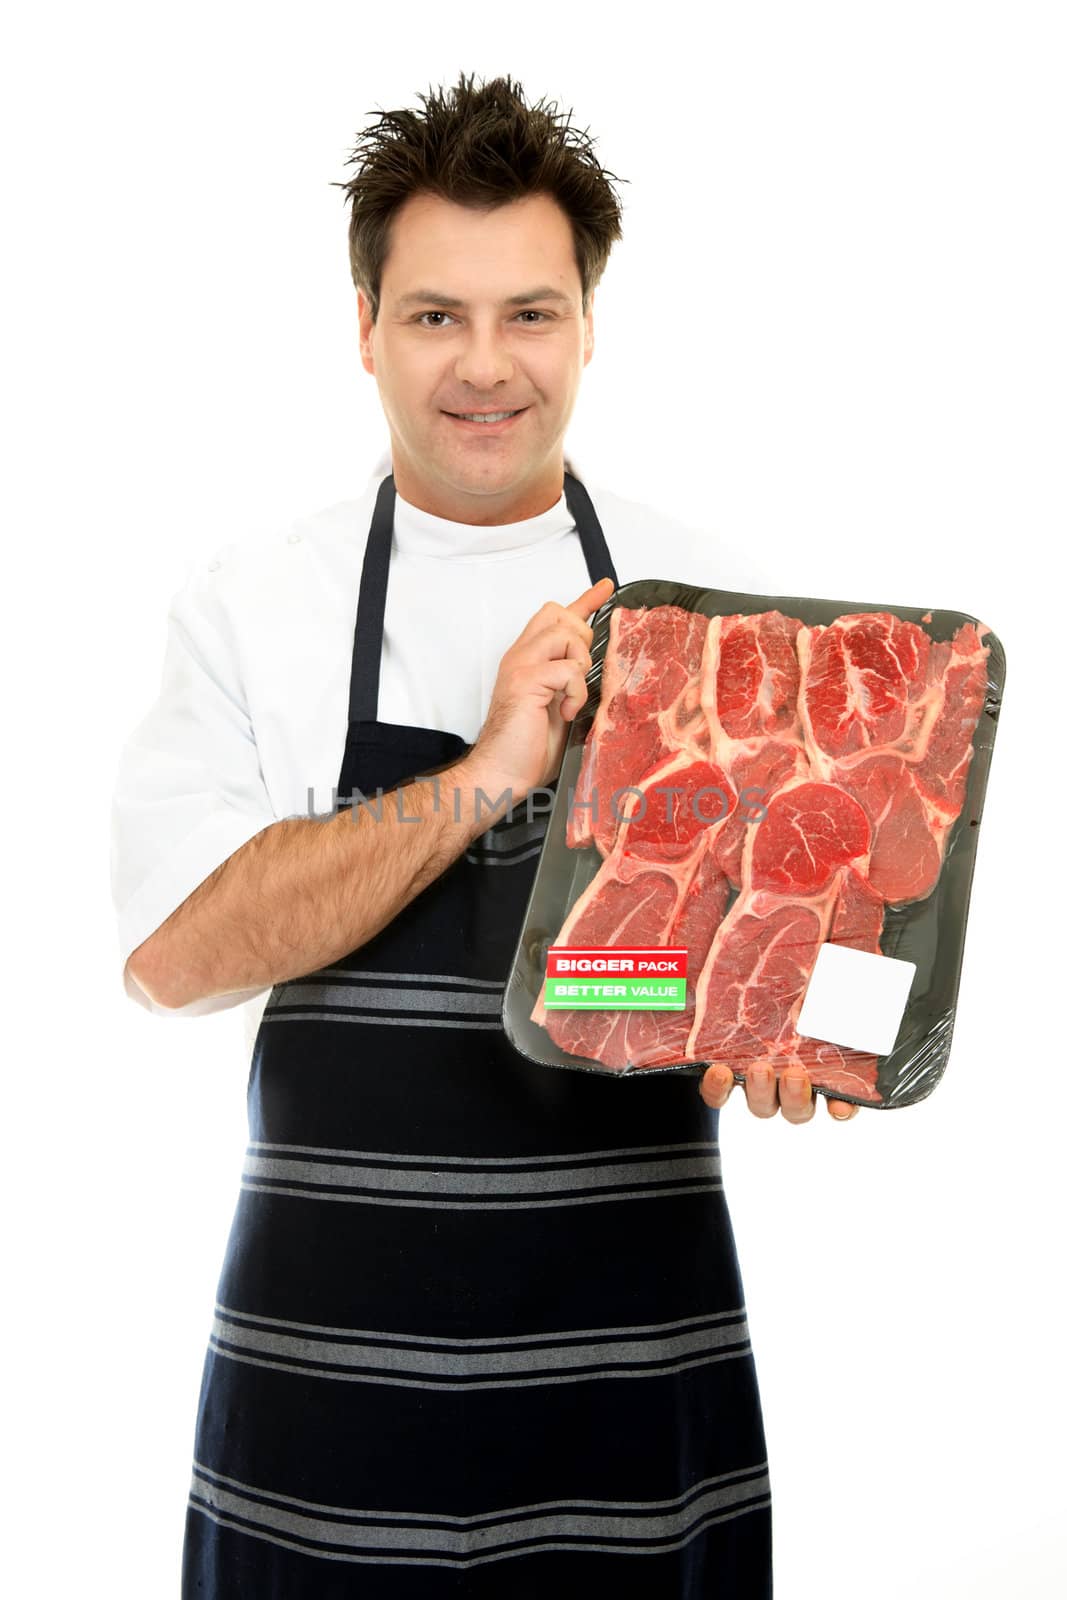 Congenial butcher holding up some fresh tender steak